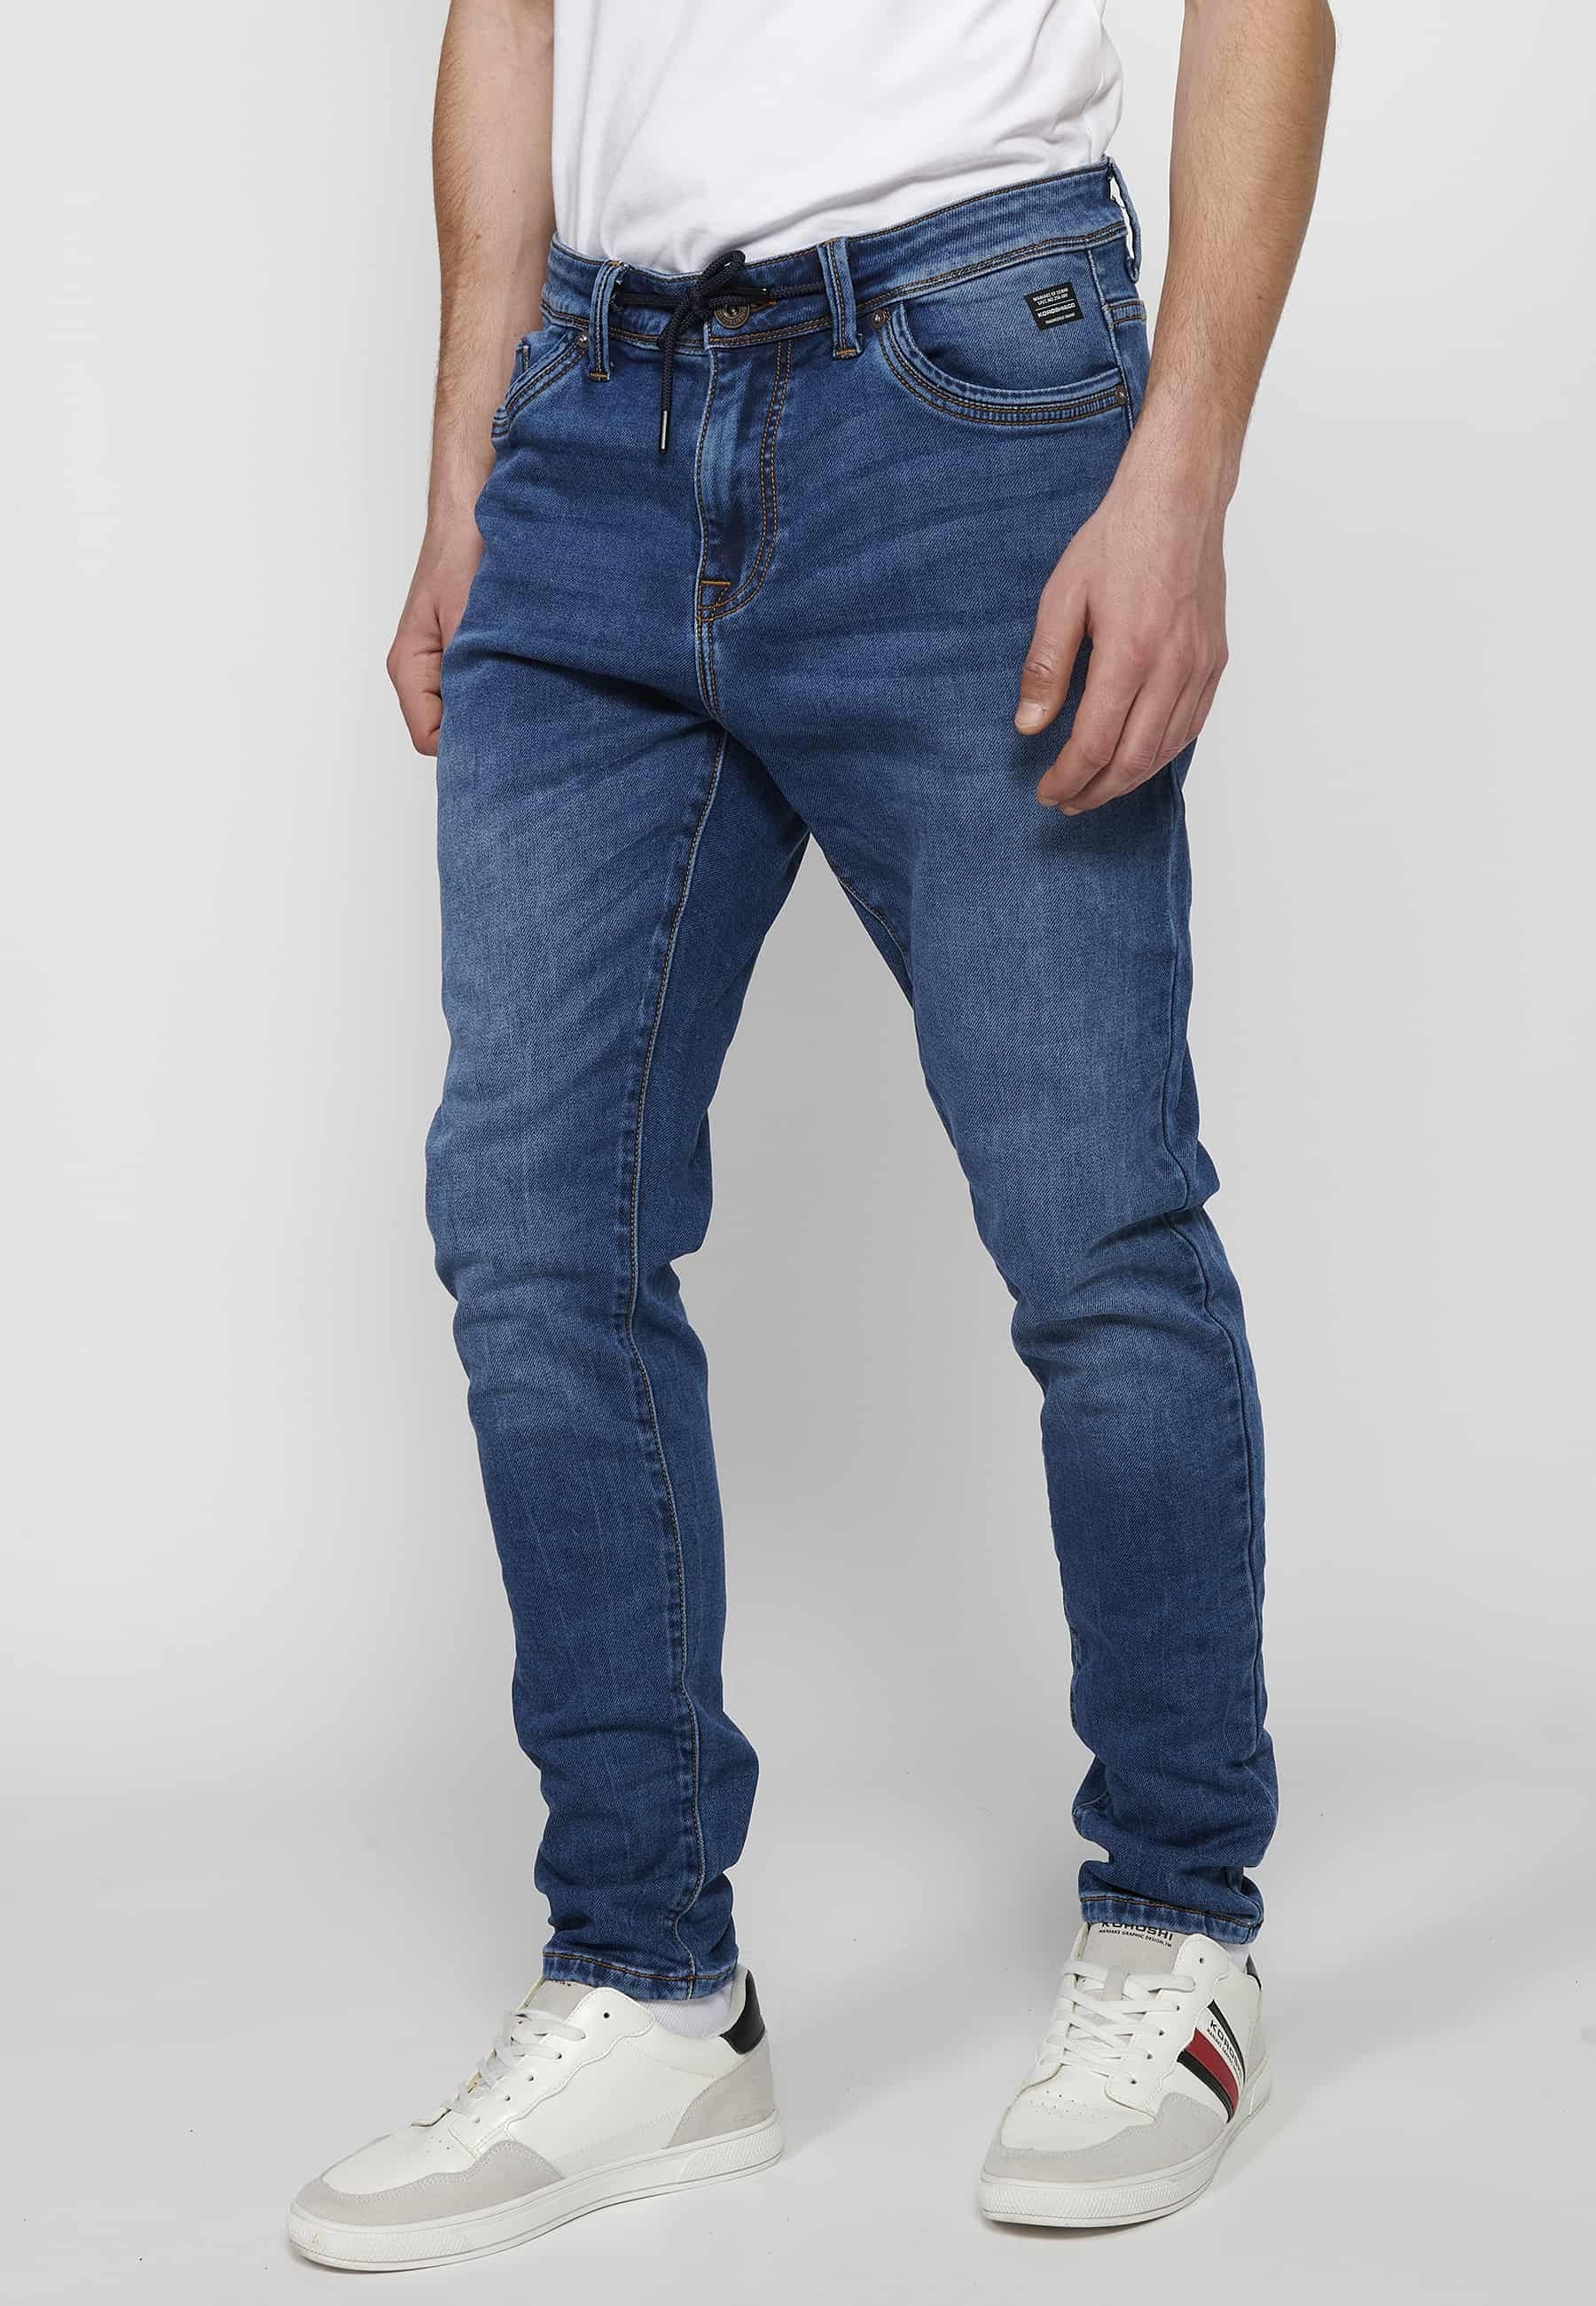 Pantalons llargs jeans llargs low rise slim fit amb Tancament davanter amb cremallera i botó de Color Blau per a Home 4